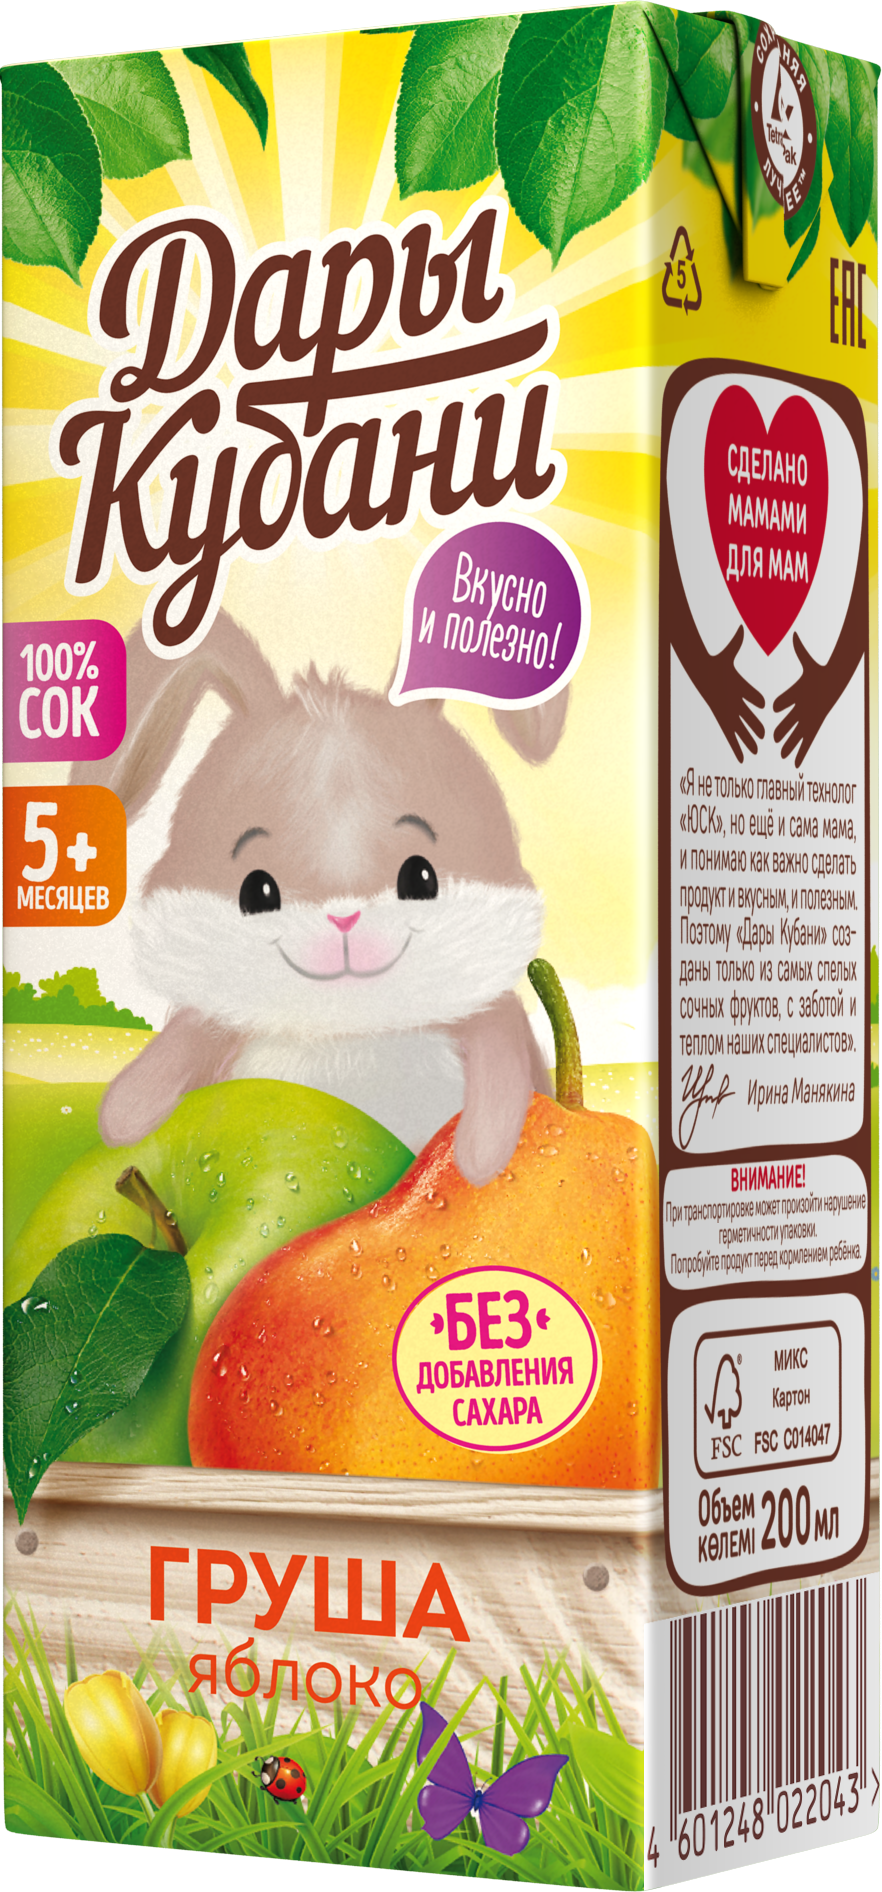 Сок детский Дары Кубани яблоко-груша без сахара осветленный 15 шт по 200 мл - фото 7